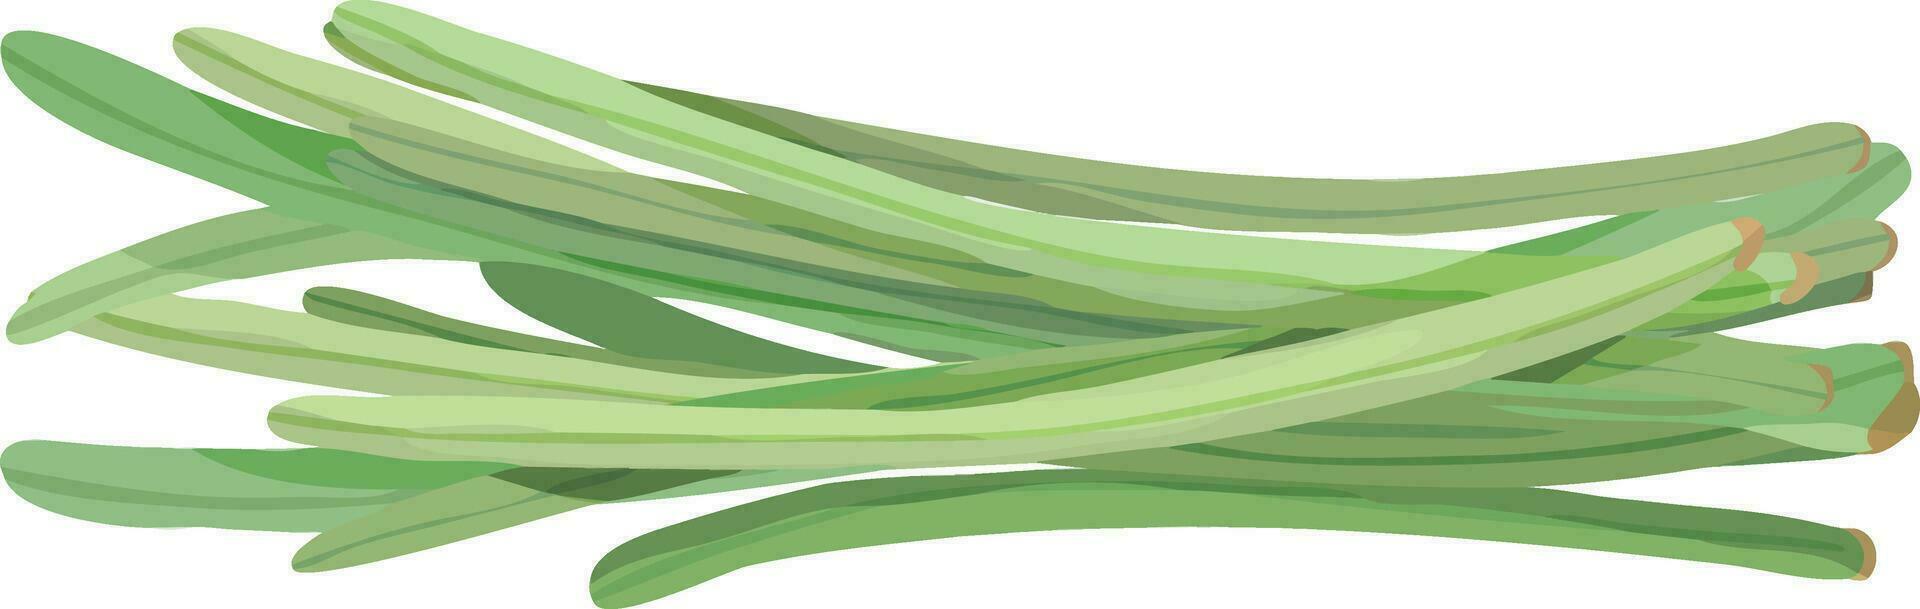 Long String Beans. Snake Beans. Asian Vegetable Illustration Vector. vector